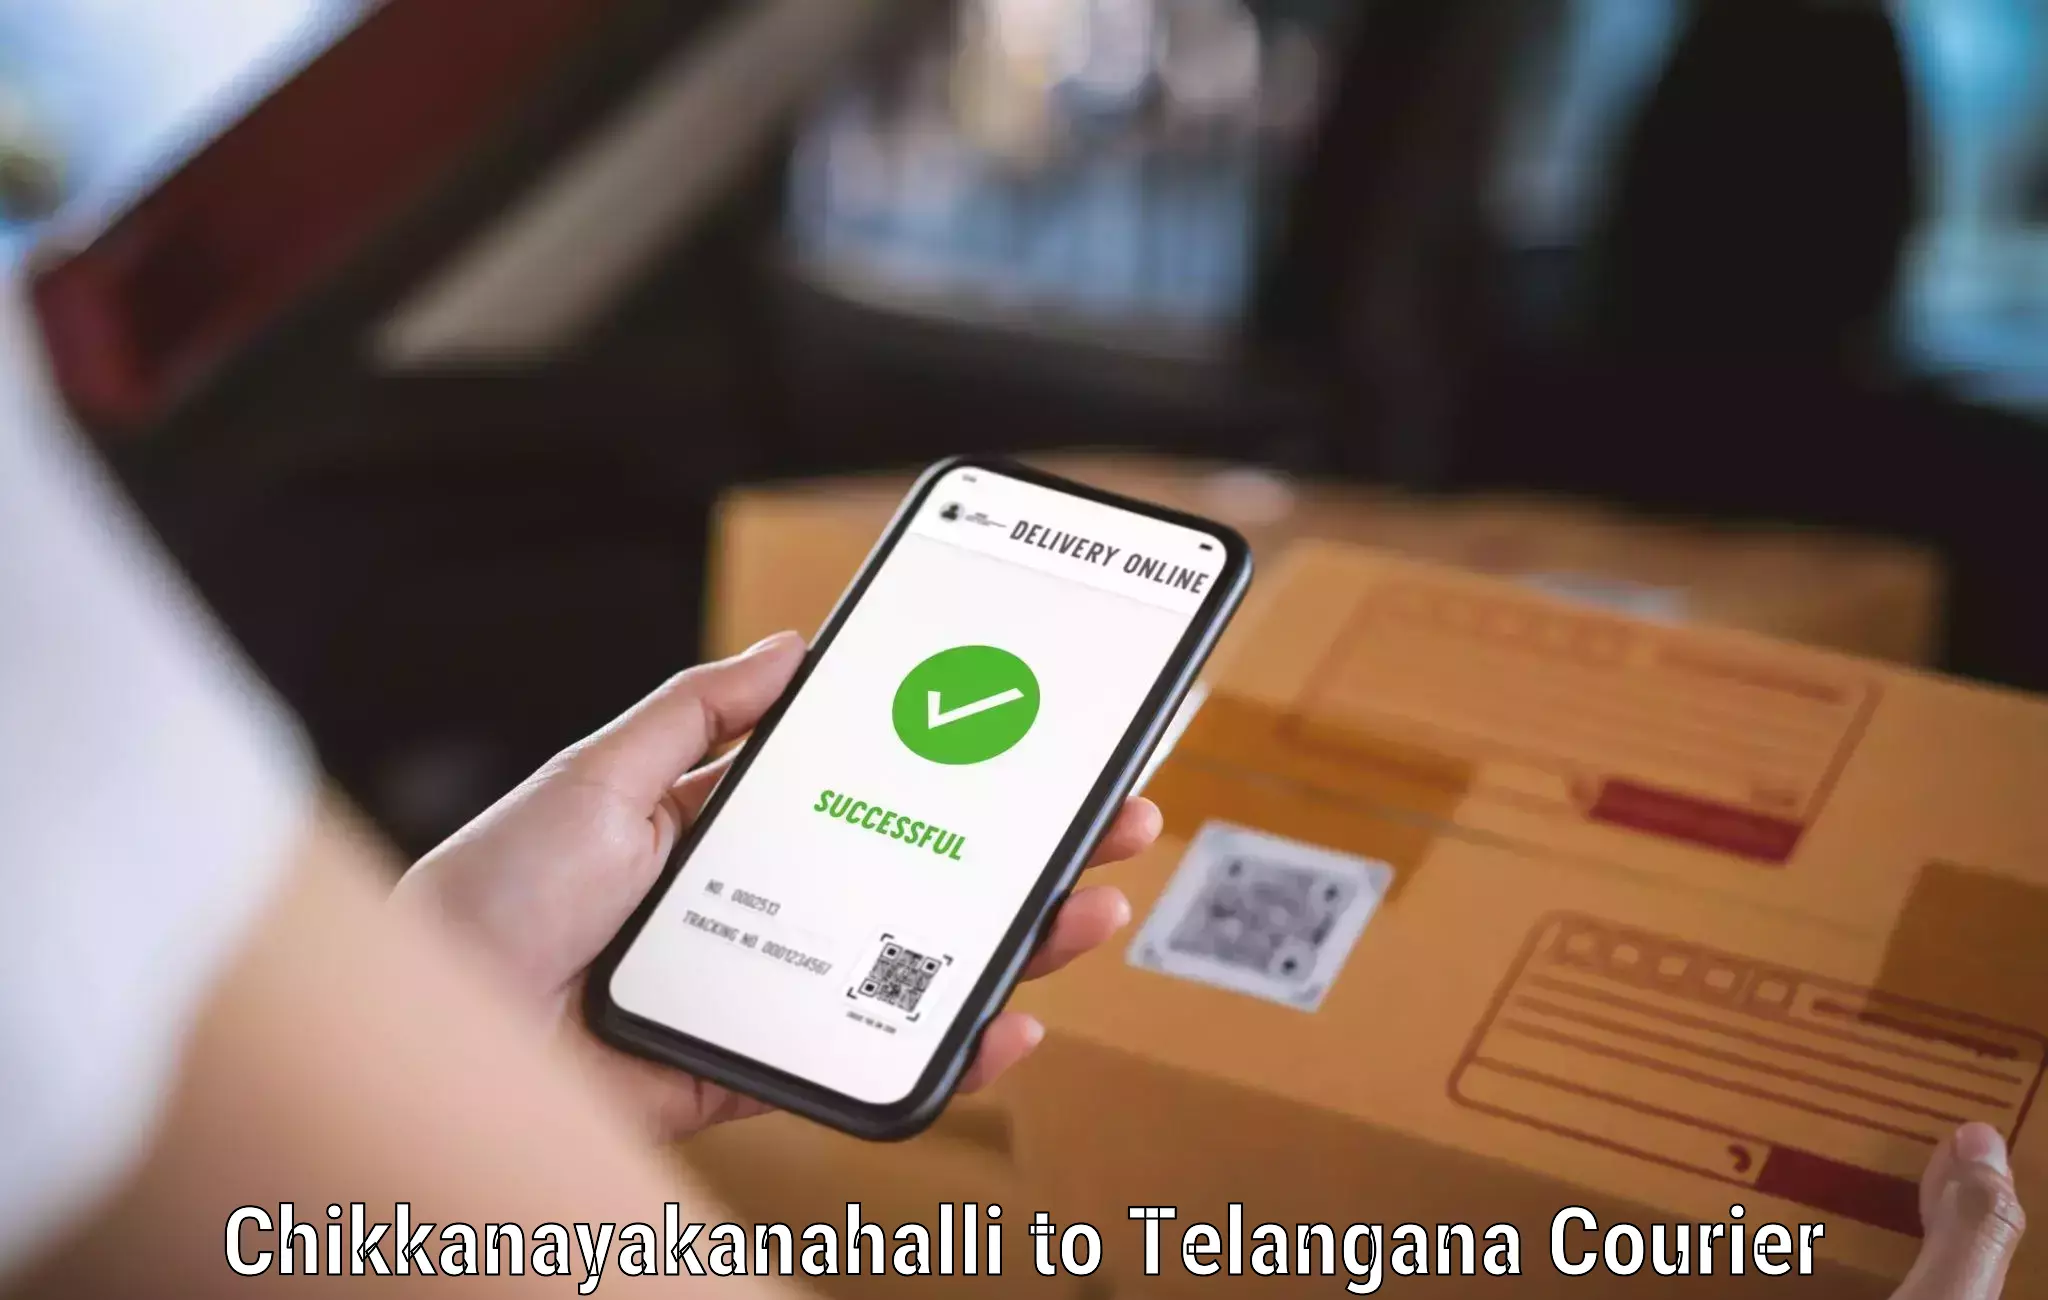 Local delivery service Chikkanayakanahalli to Yellareddipet